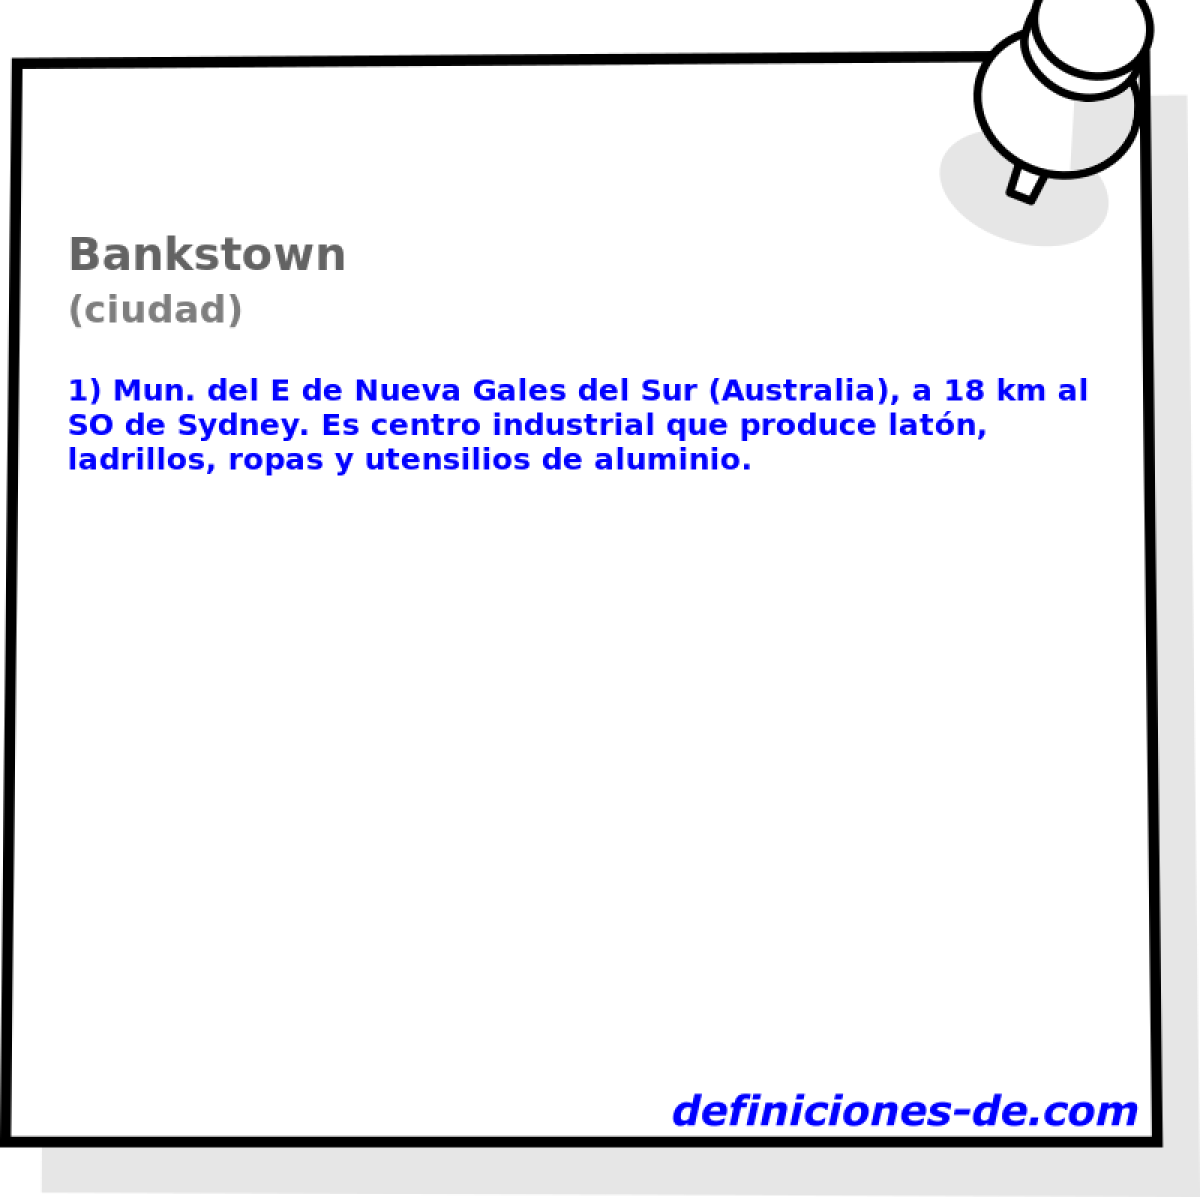 Bankstown (ciudad)